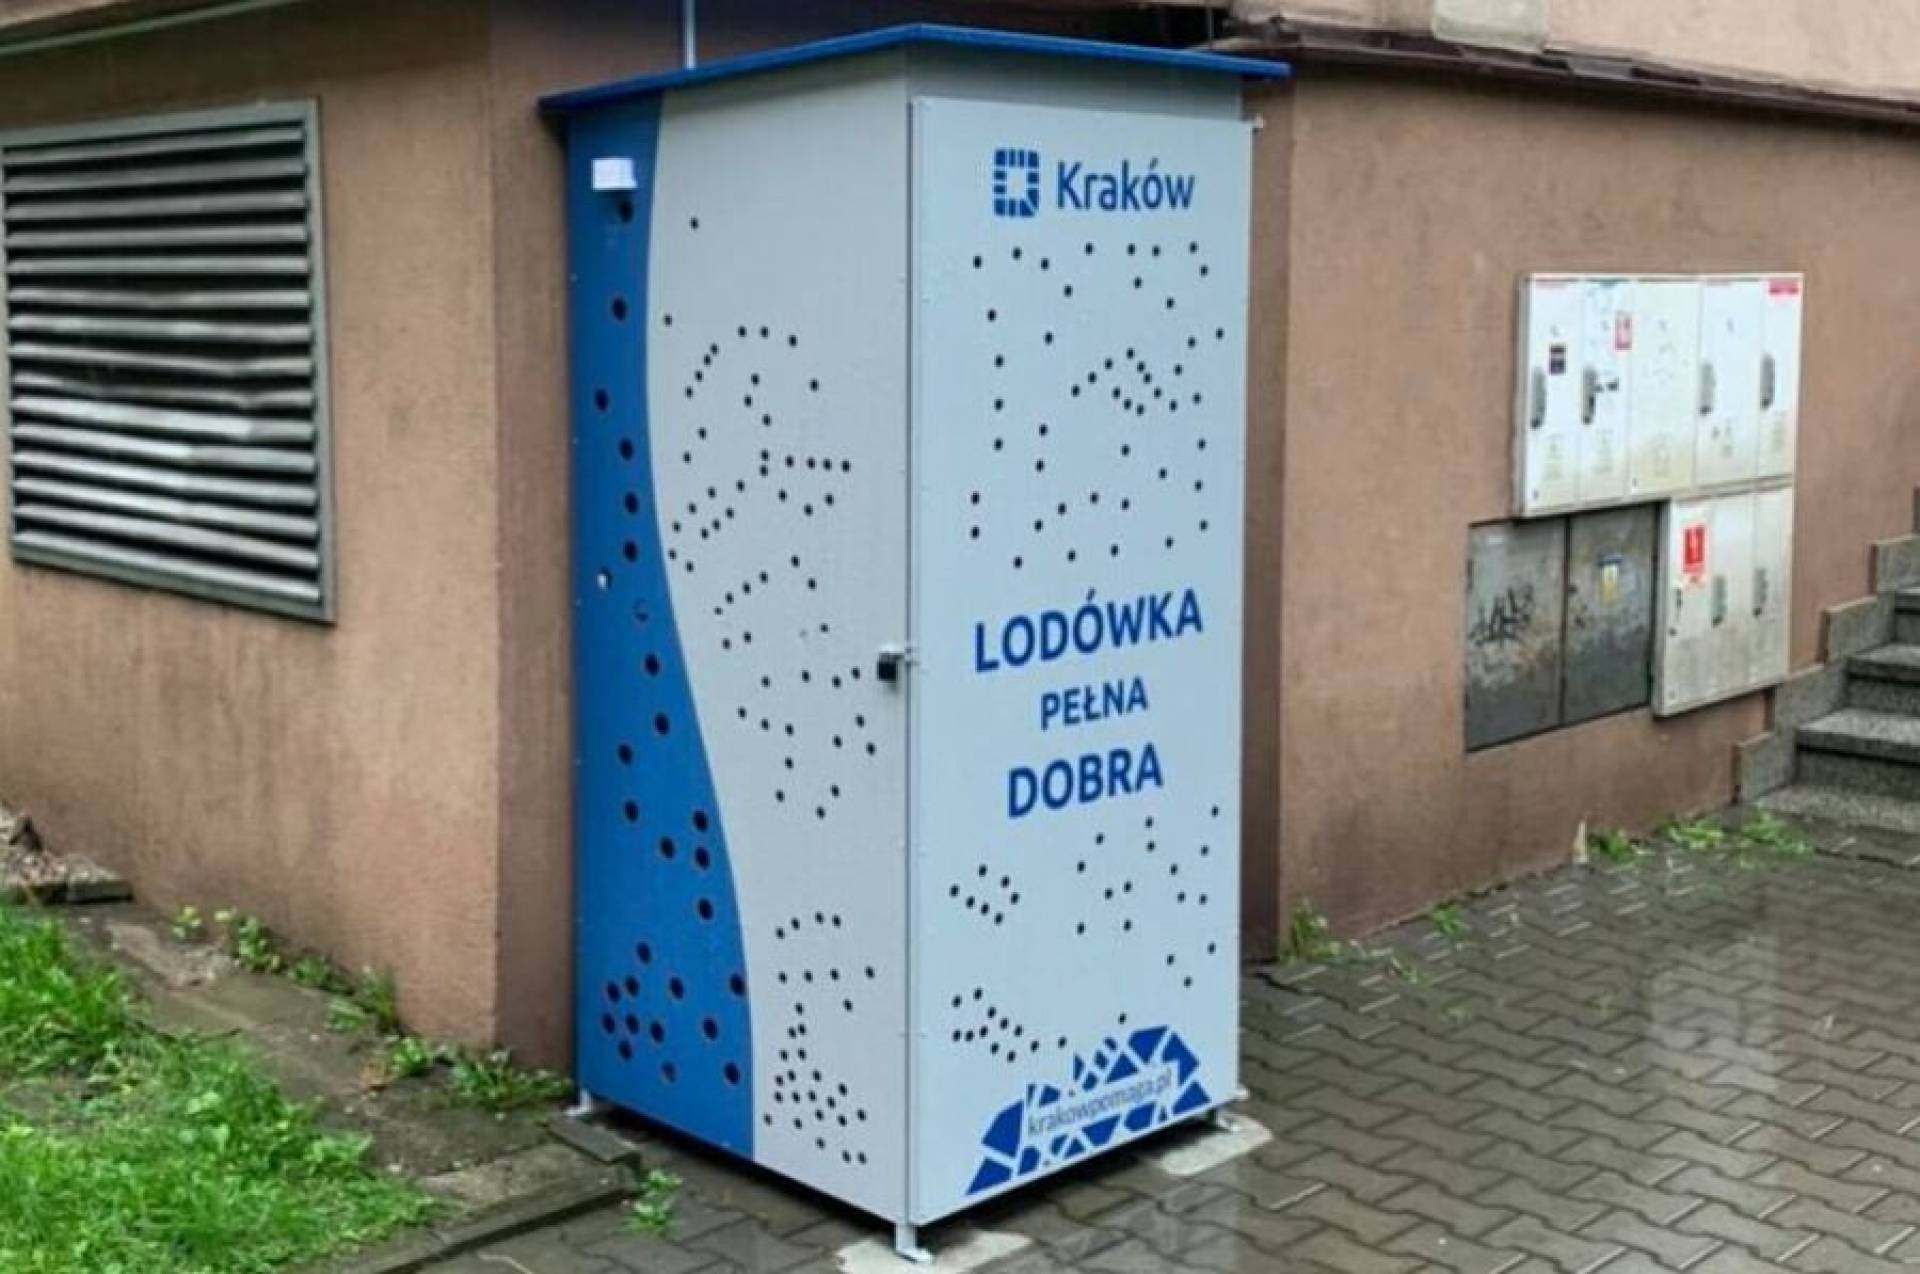 W Krakowie stanęły lodówki społeczne. Znakomita idea